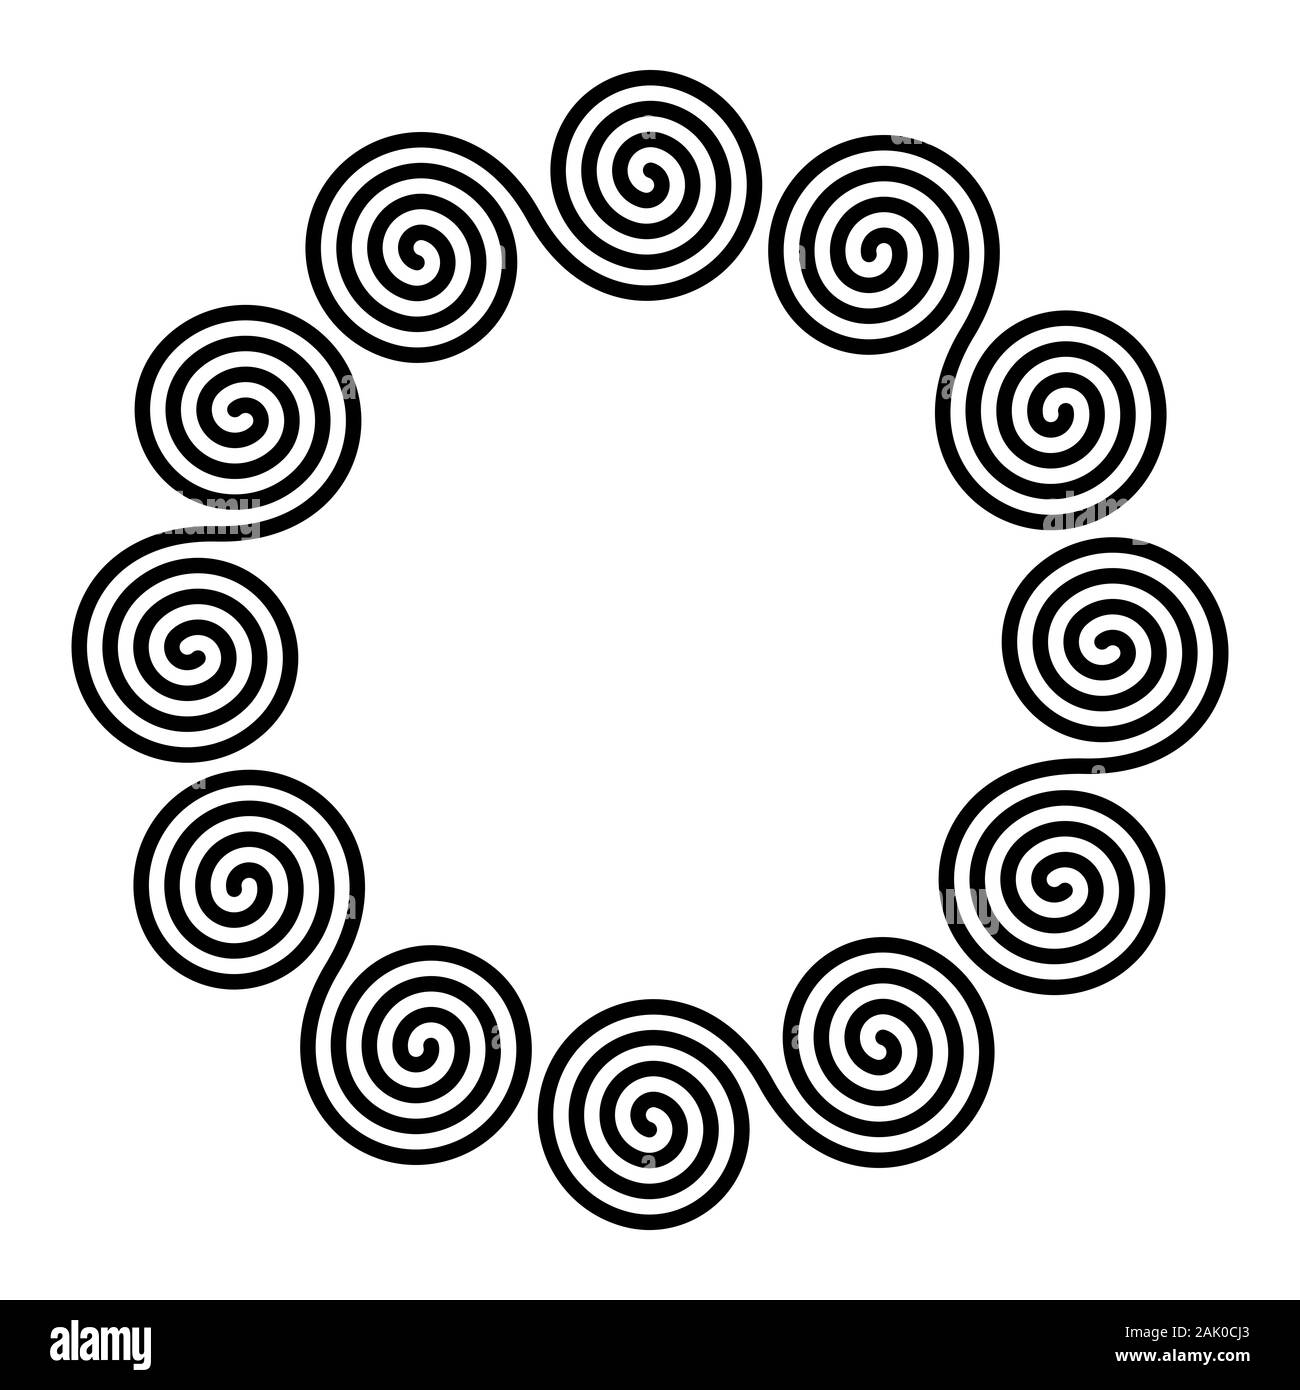 Der kleine Kreis förmigen Rahmen von sechs linearen doppelte Spiralen. Verriegelt kombiniert Spiralen bilden ein dekoratives Motiv, aus wiederholten Linien gebaut. Stockfoto